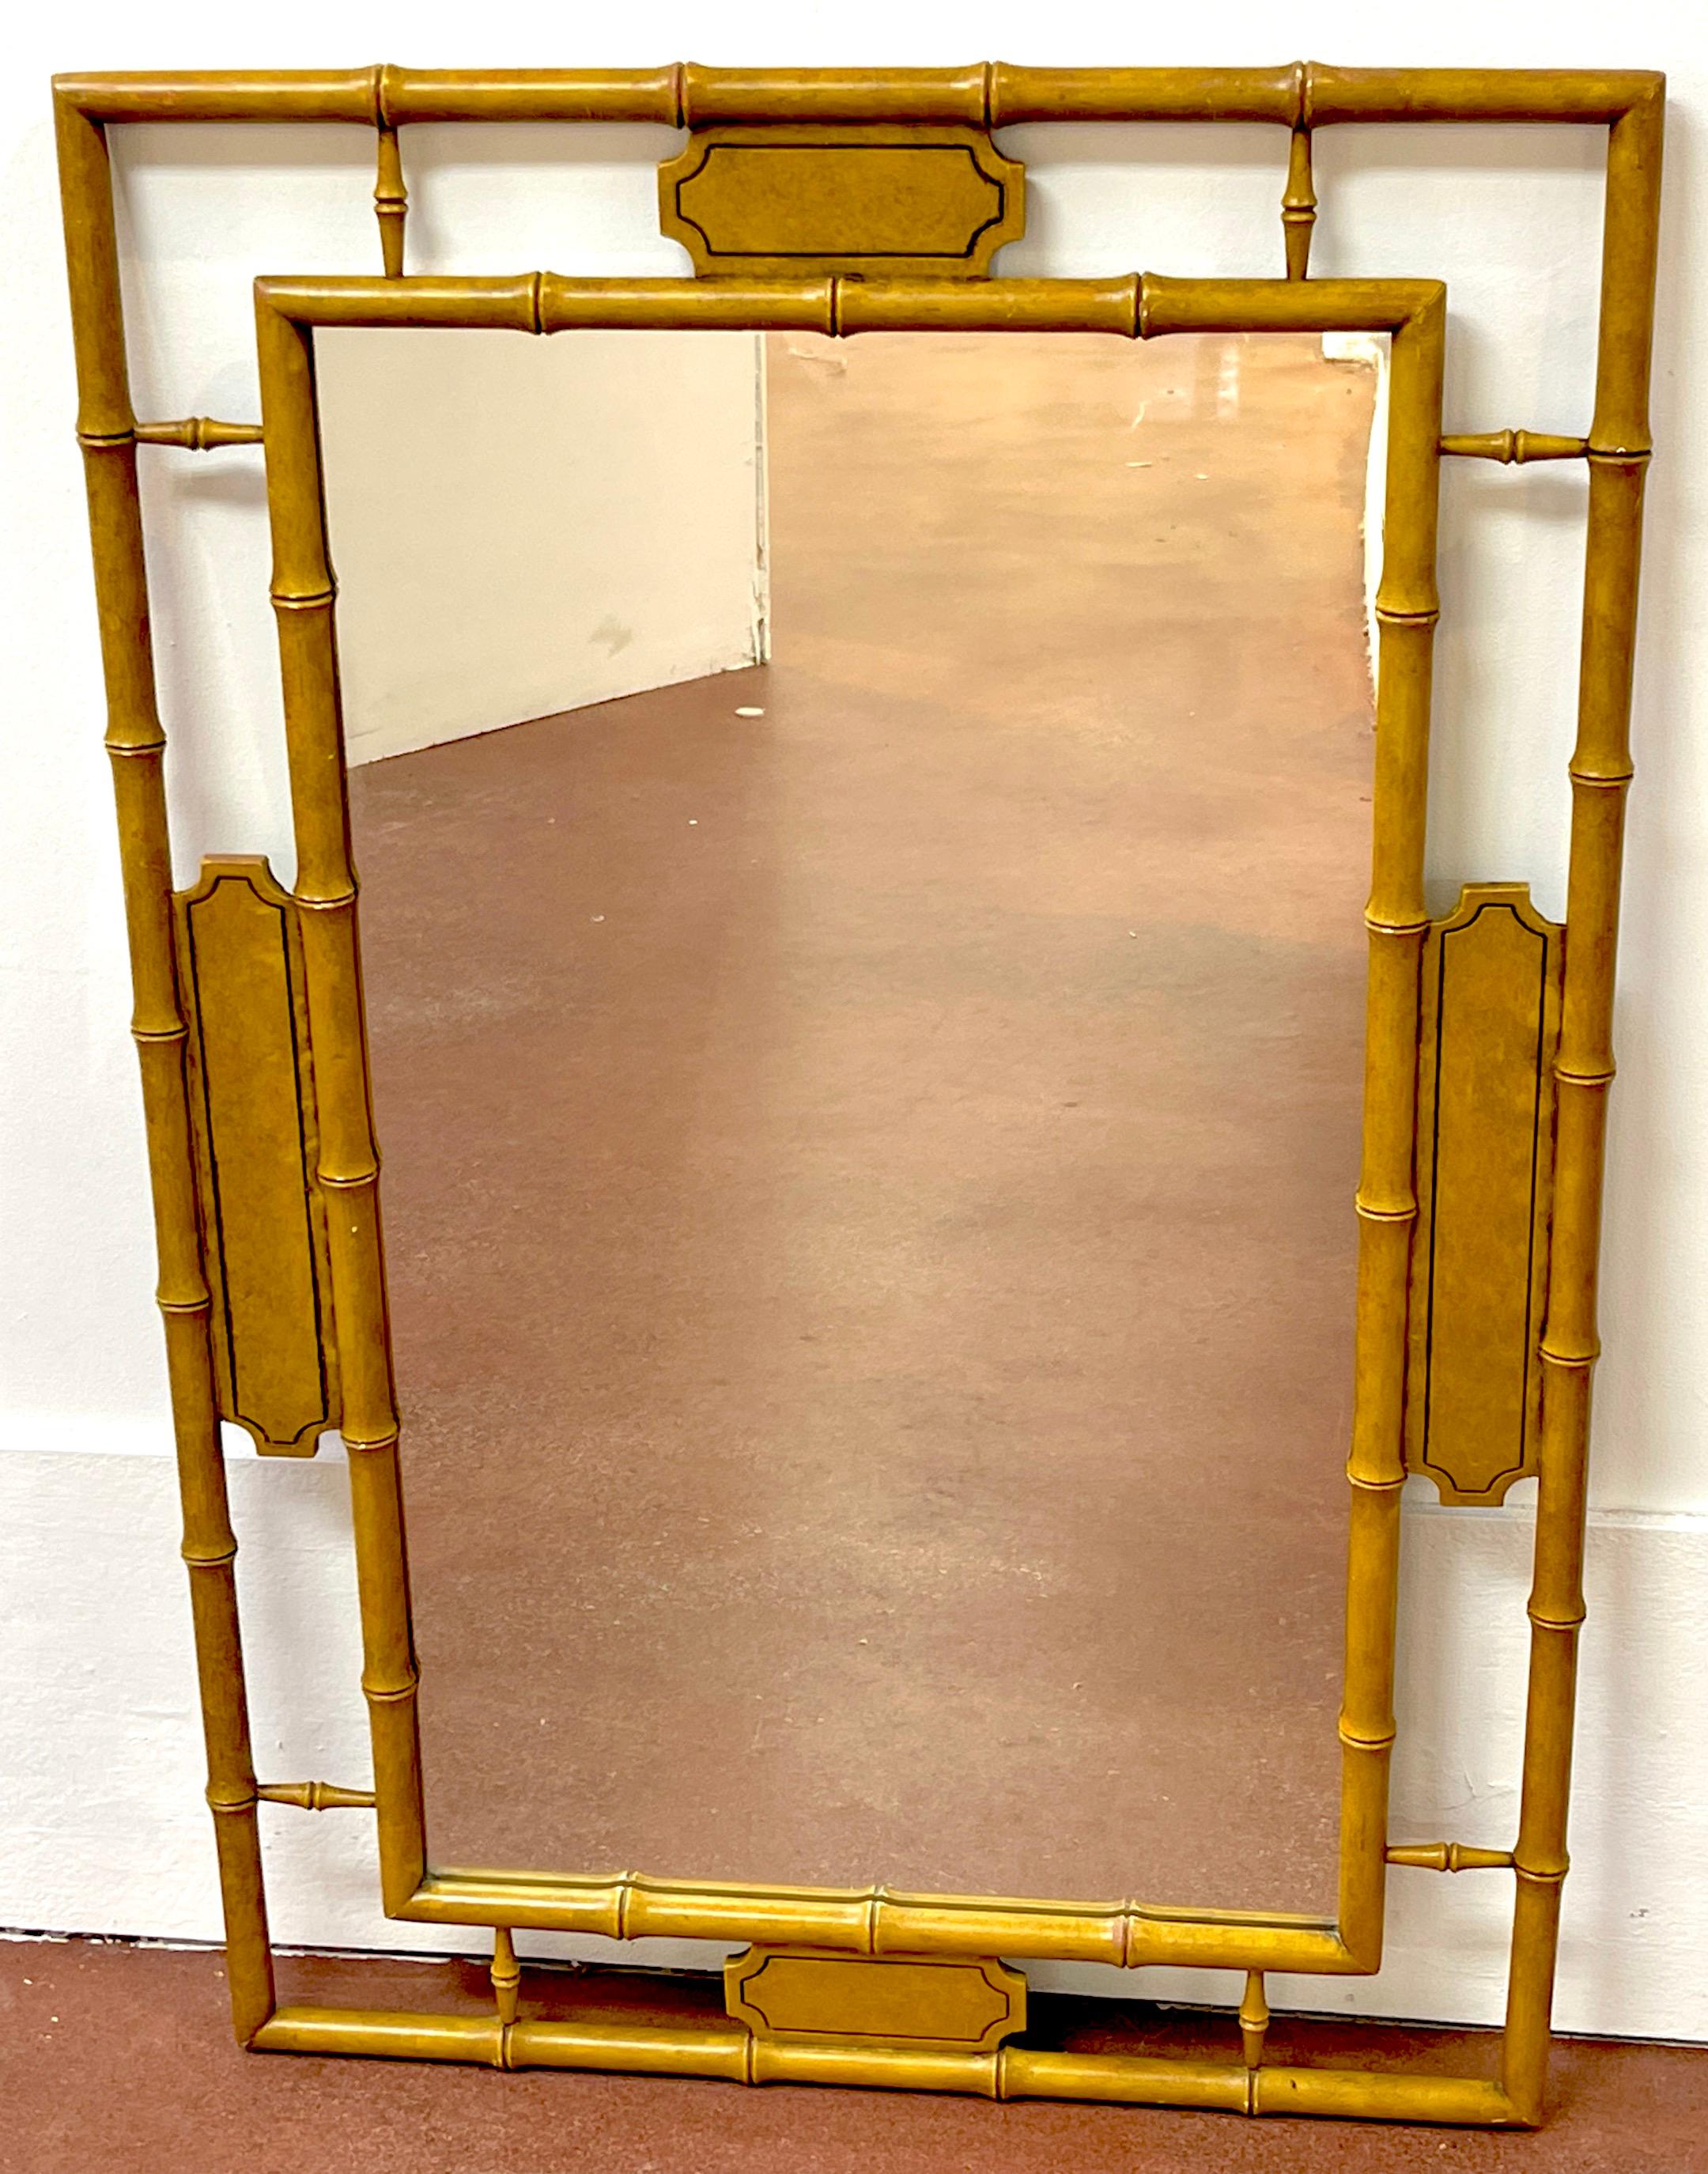 Englischer Regency-Stil Faux Bamboo Saddle Lacquer Spiegel 
England, 20. Jahrhundert 
Ein wunderschöner Spiegel im englischen Regency-Stil des 20. Jahrhunderts aus lackiertem Bambusimitat ist eine atemberaubende Ergänzung für jede Einrichtung. Mit